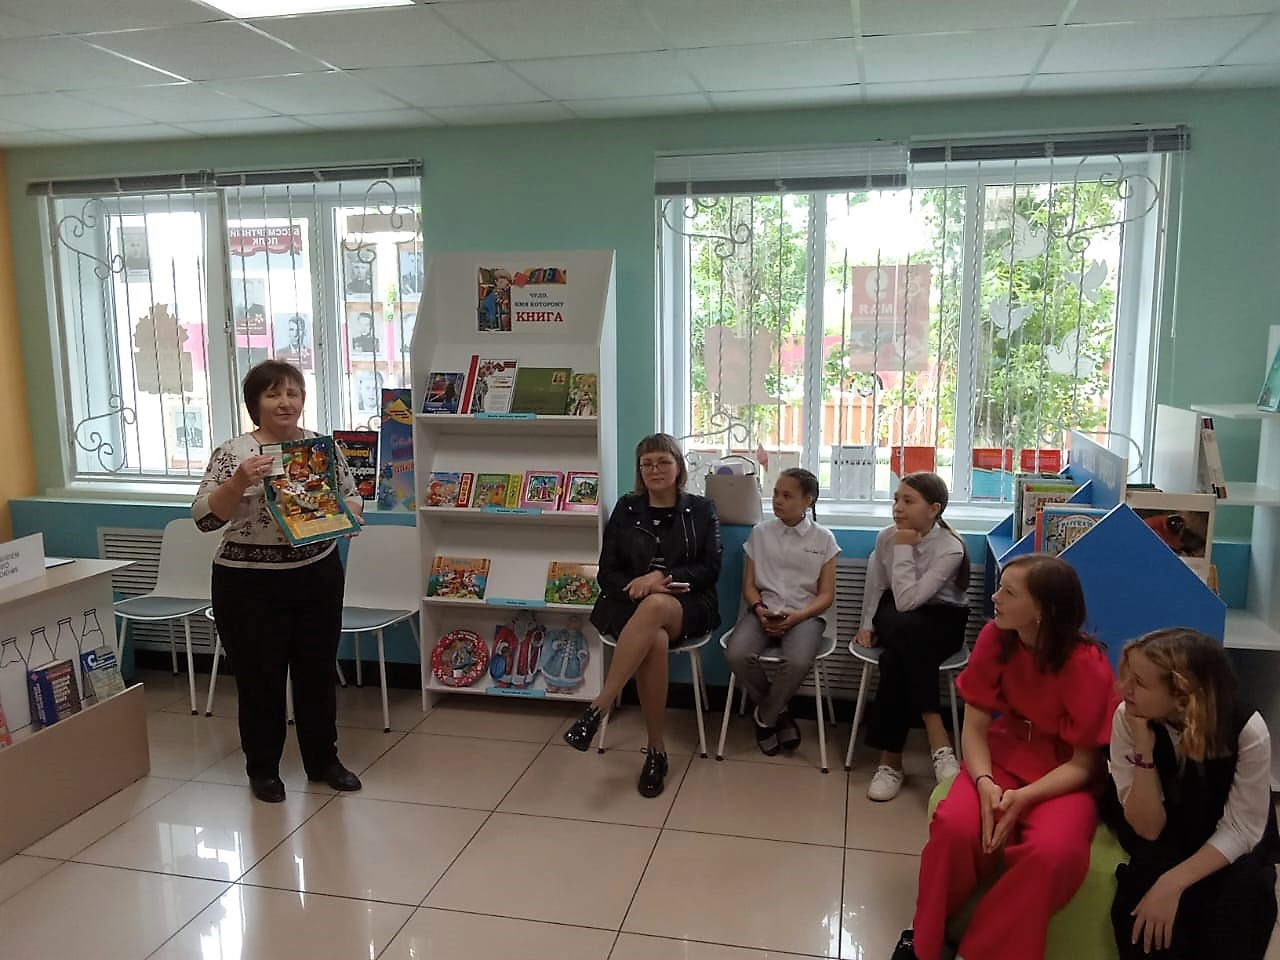 Степновские школьники весело провели время в районной детской библиотеке